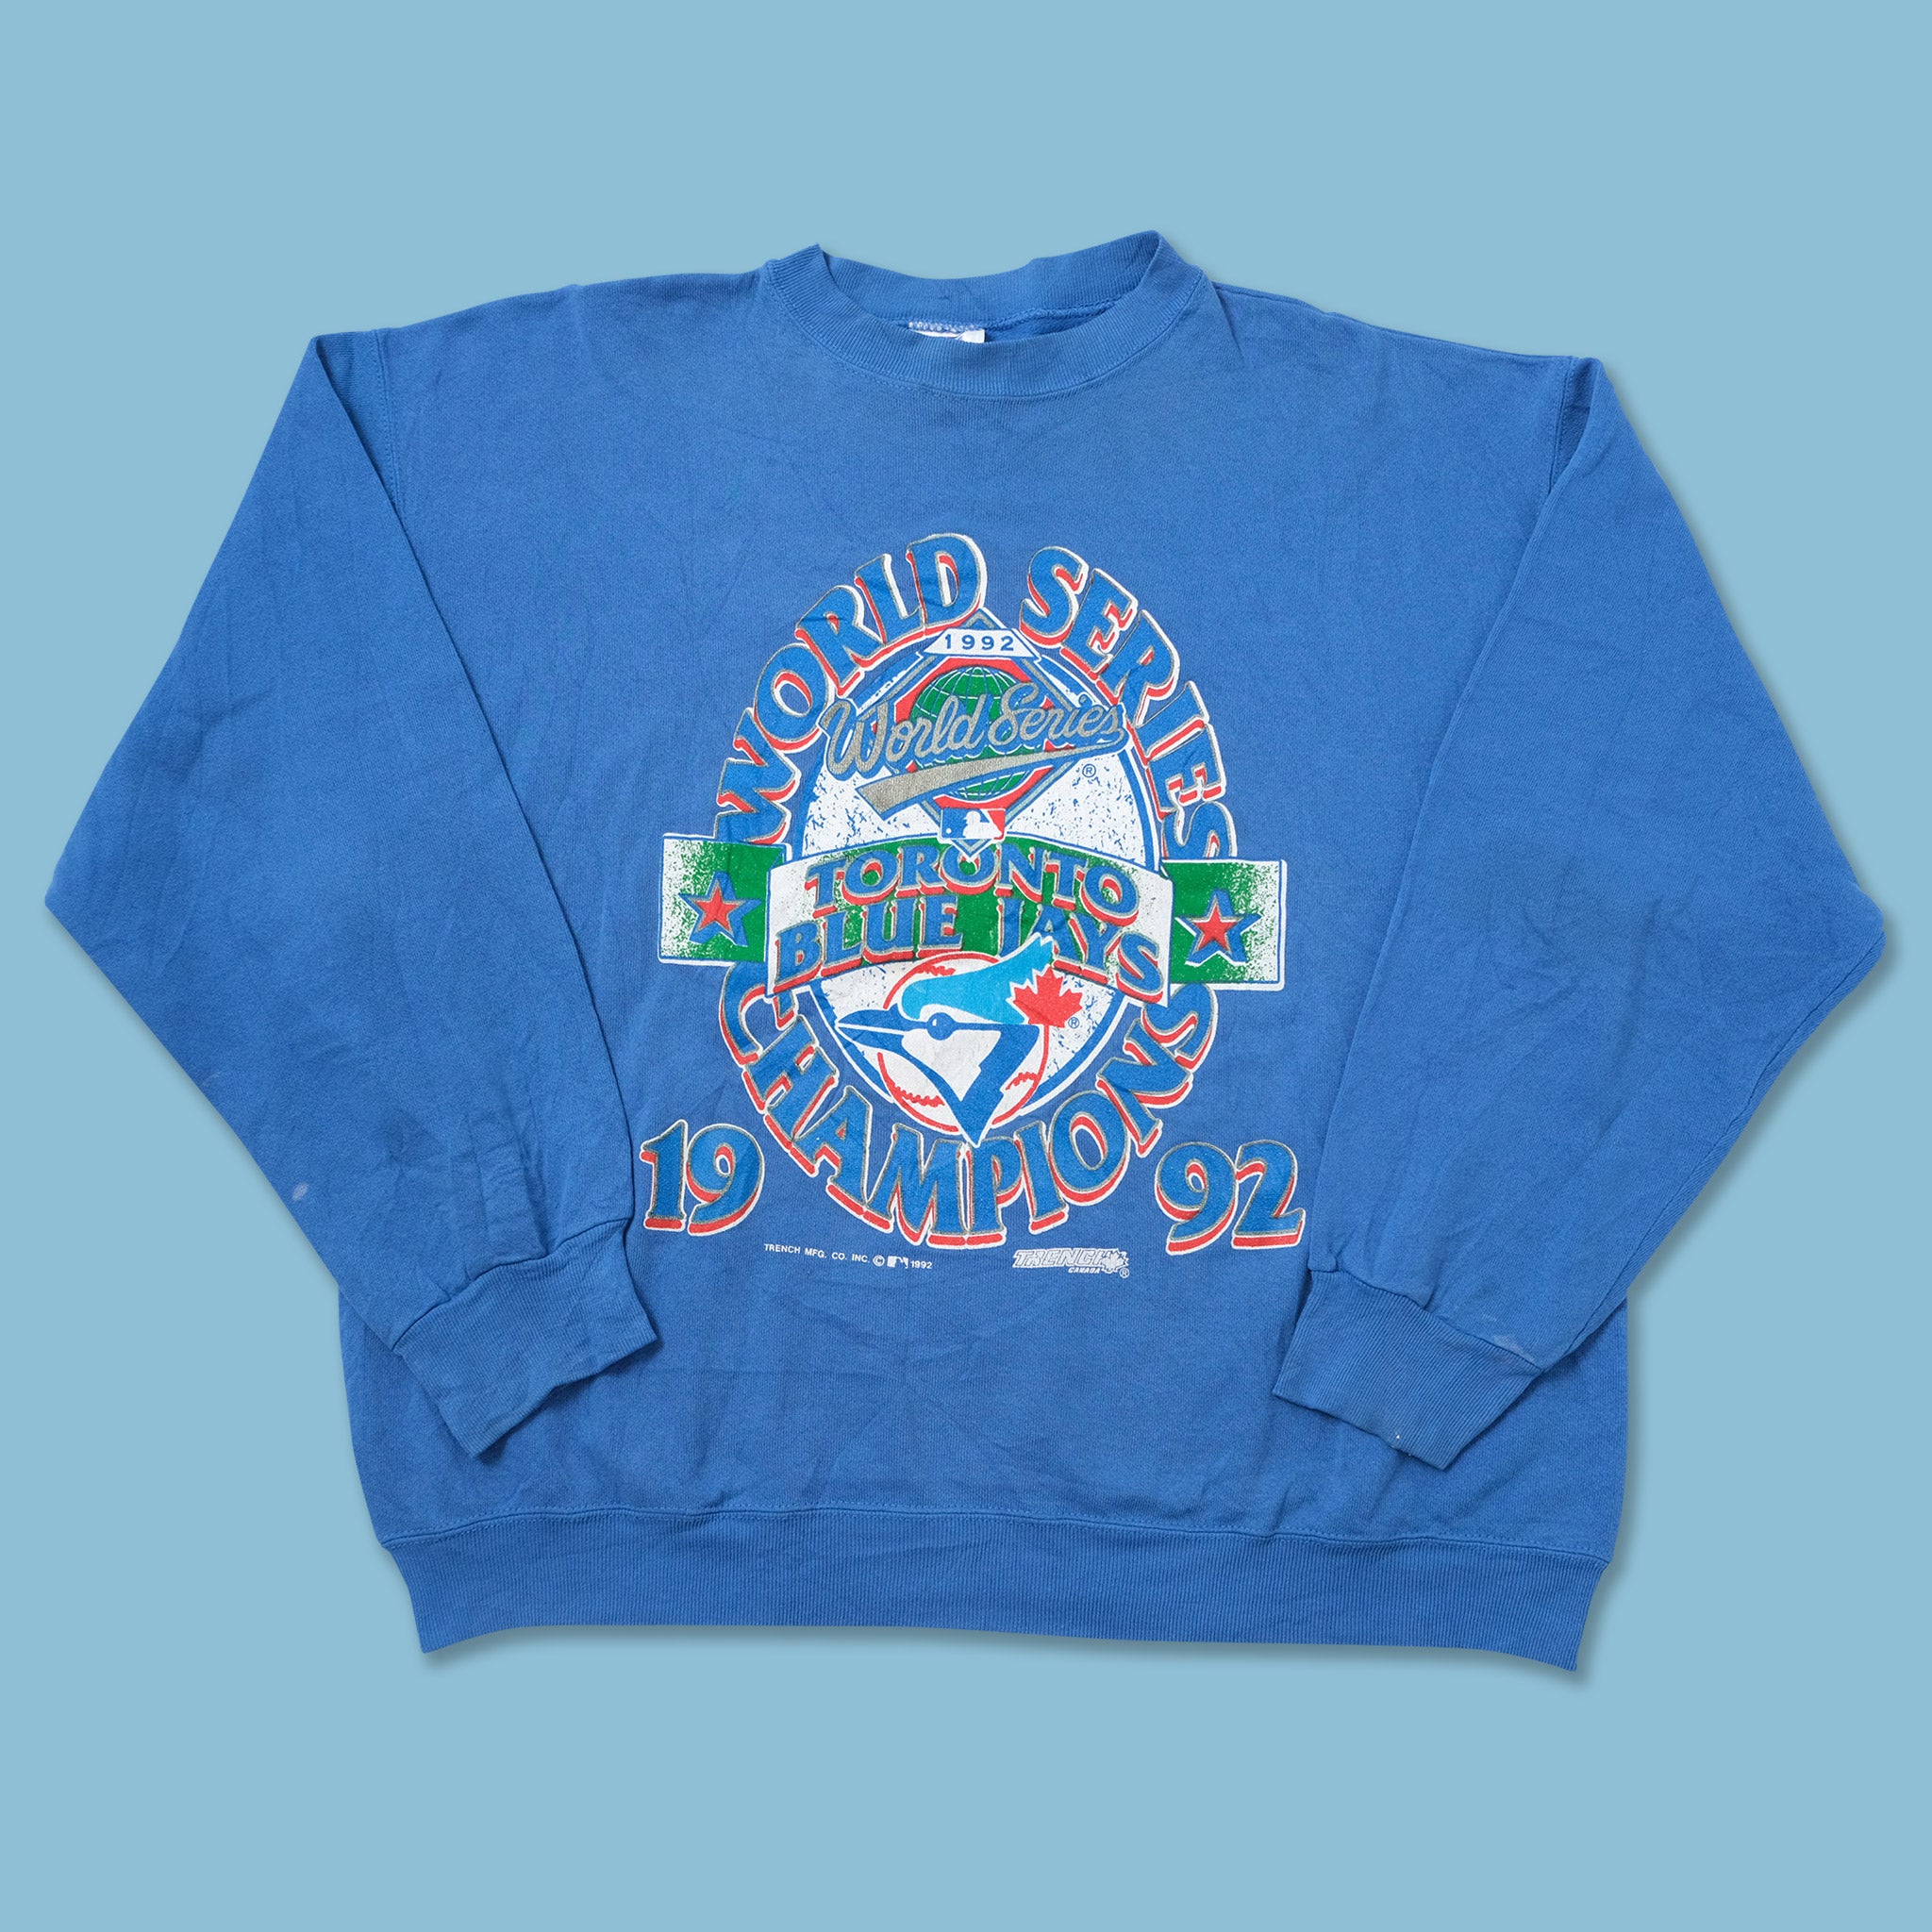 vintage toronto blue jays sweatshirt